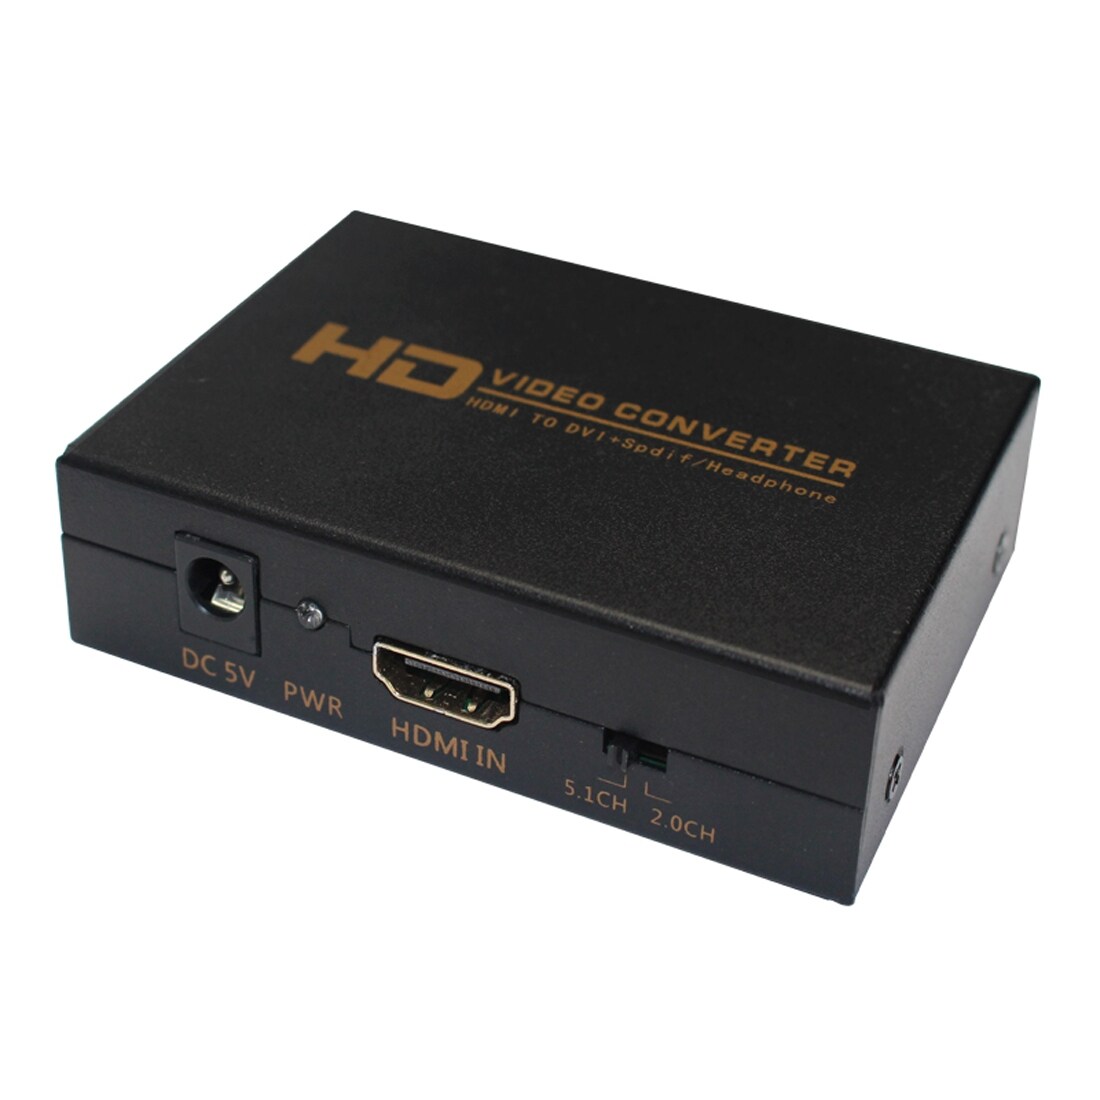 HDMI - DVI + Spdif / Kuulokeadapteri